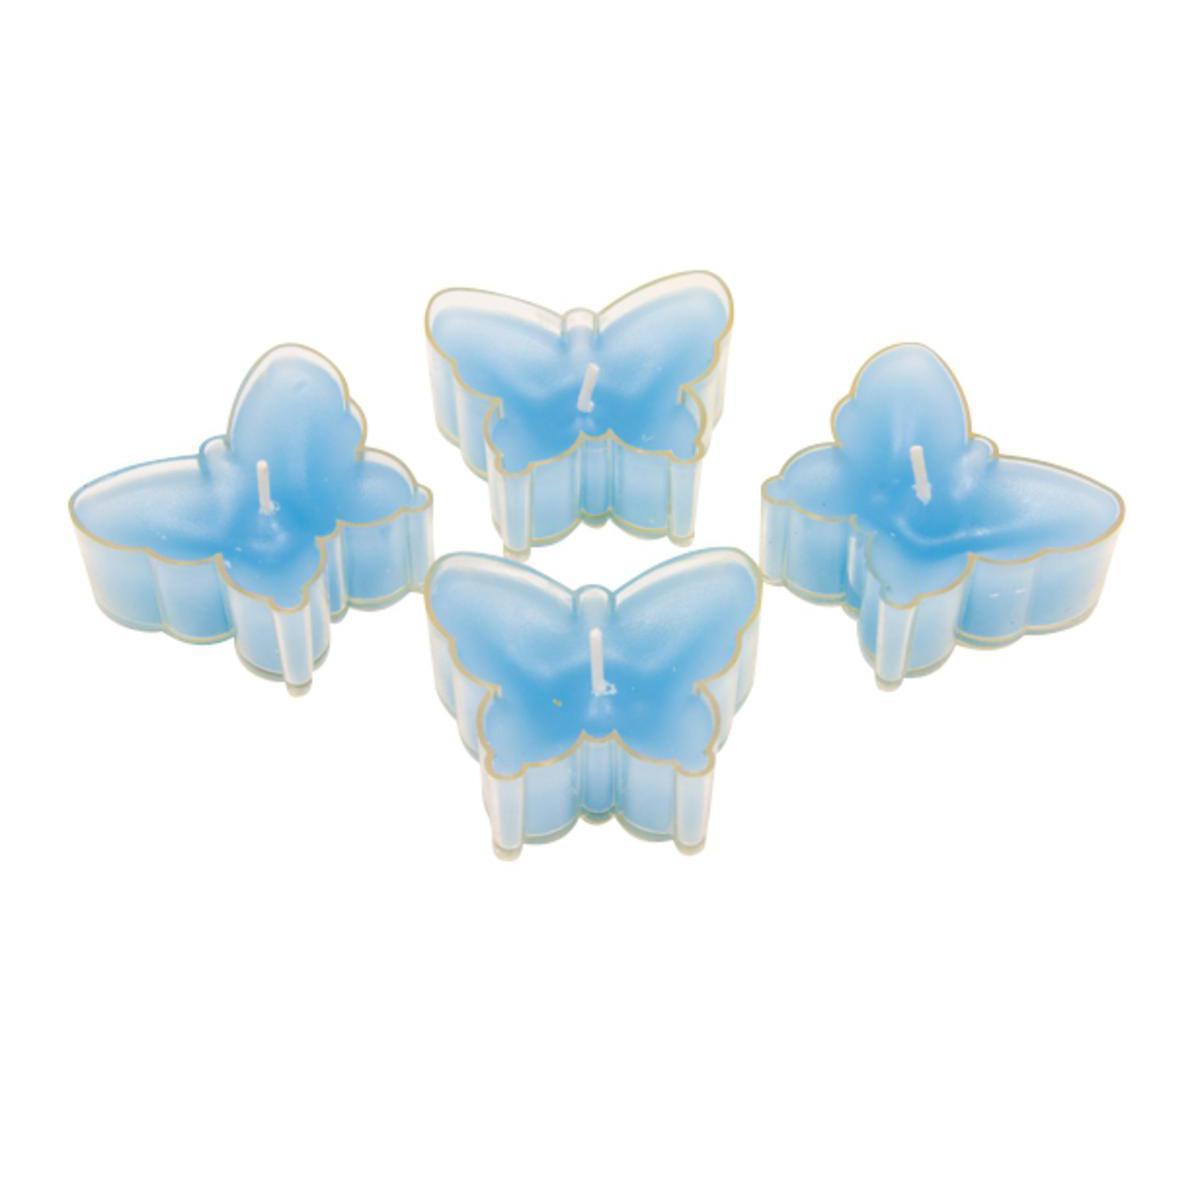 Lot de 4 bougies chauffe plat en forme de papillon - Cire - 4,7 x 4,2 x 1,6 cm - Turquoise